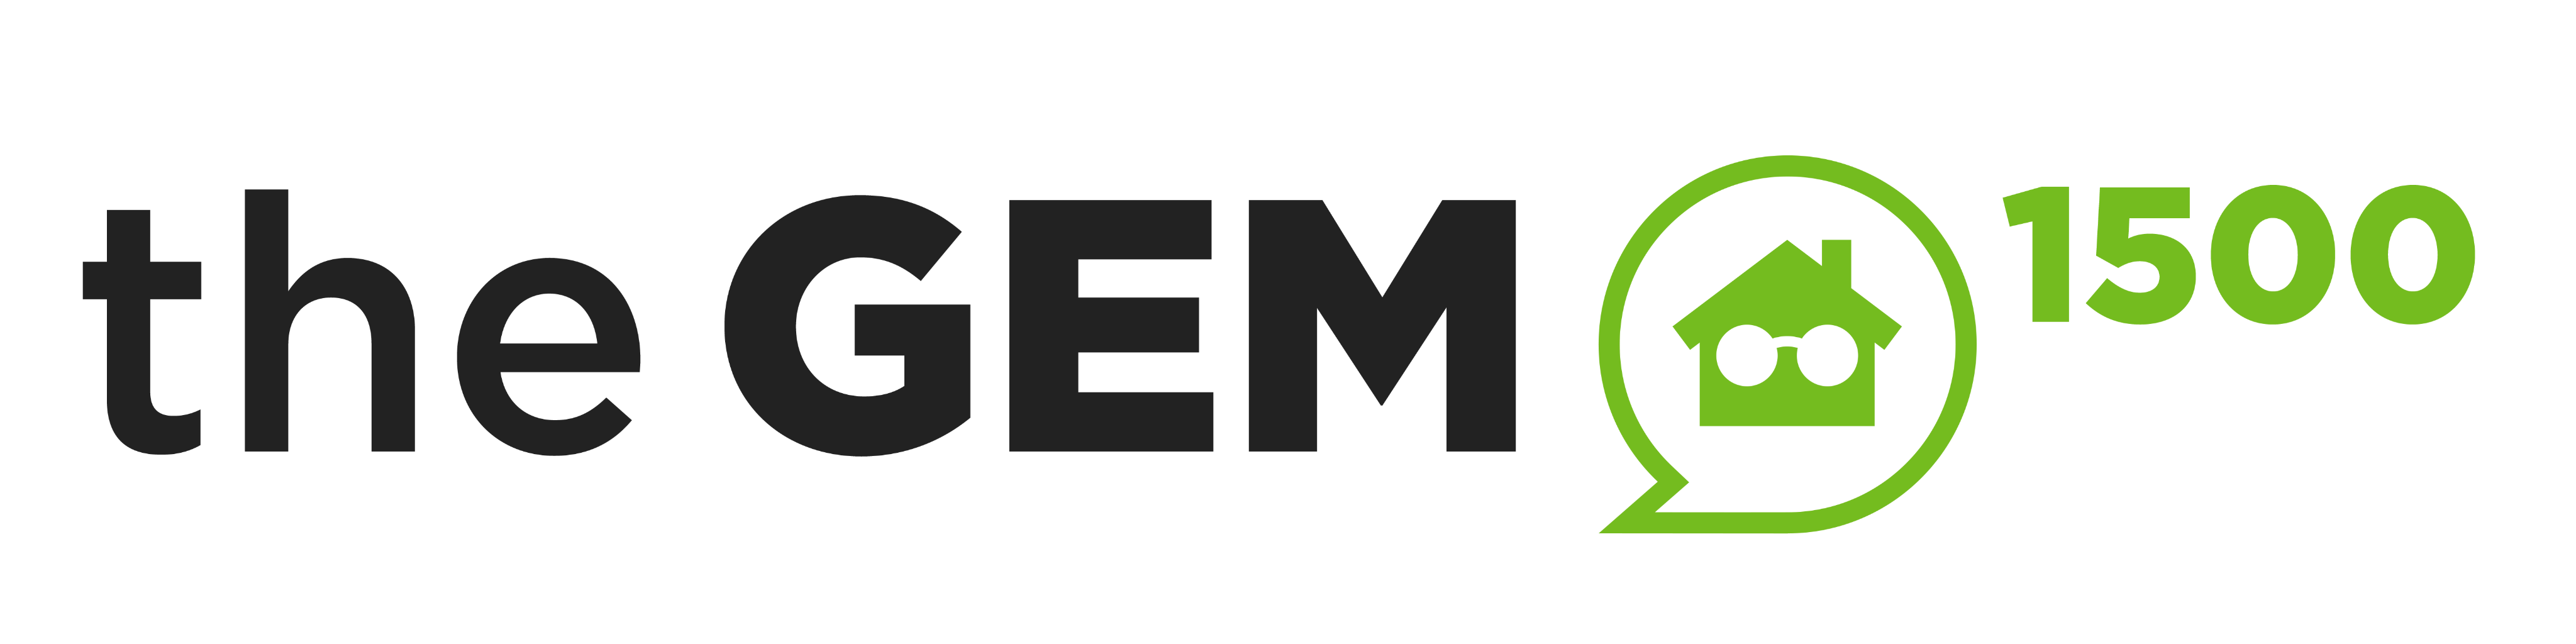 The GEM 500 Horizontal Logo